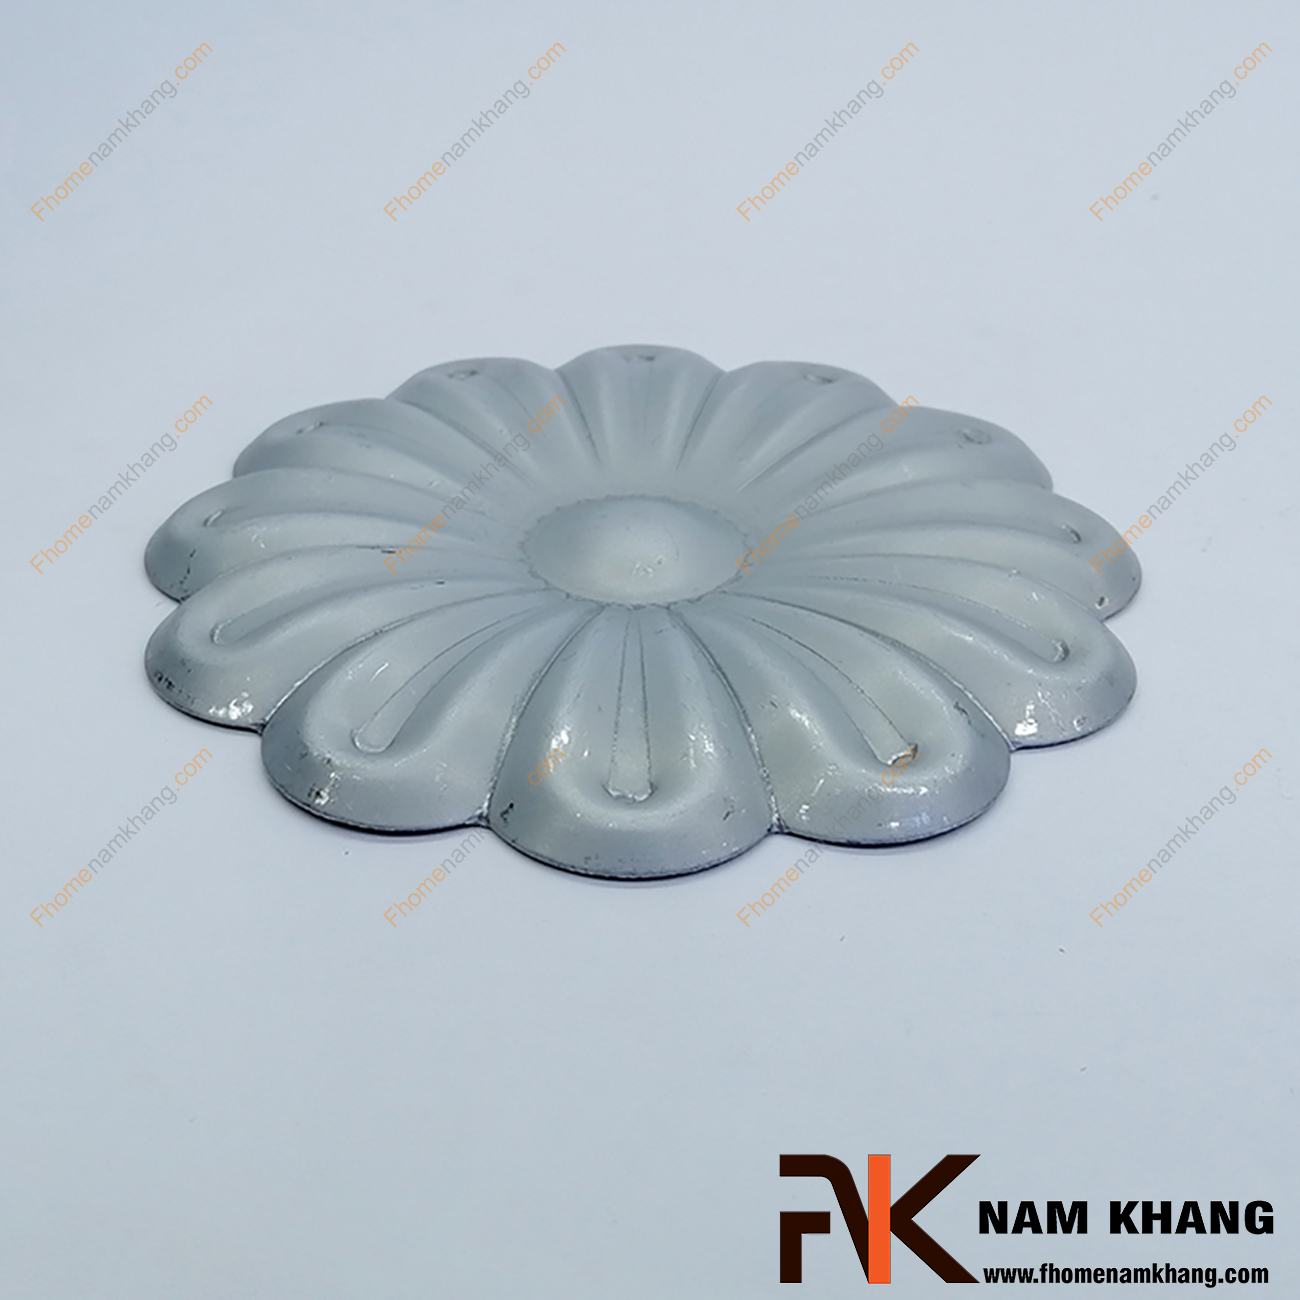 Hoa thép dập hình bông mai 12cm NKS-01 được sản xuất từ thép tấm có độ dày 1-2mm, có bề mặt láng mịn, hàn gắn dể dàng vào các chi tiết thép khác.